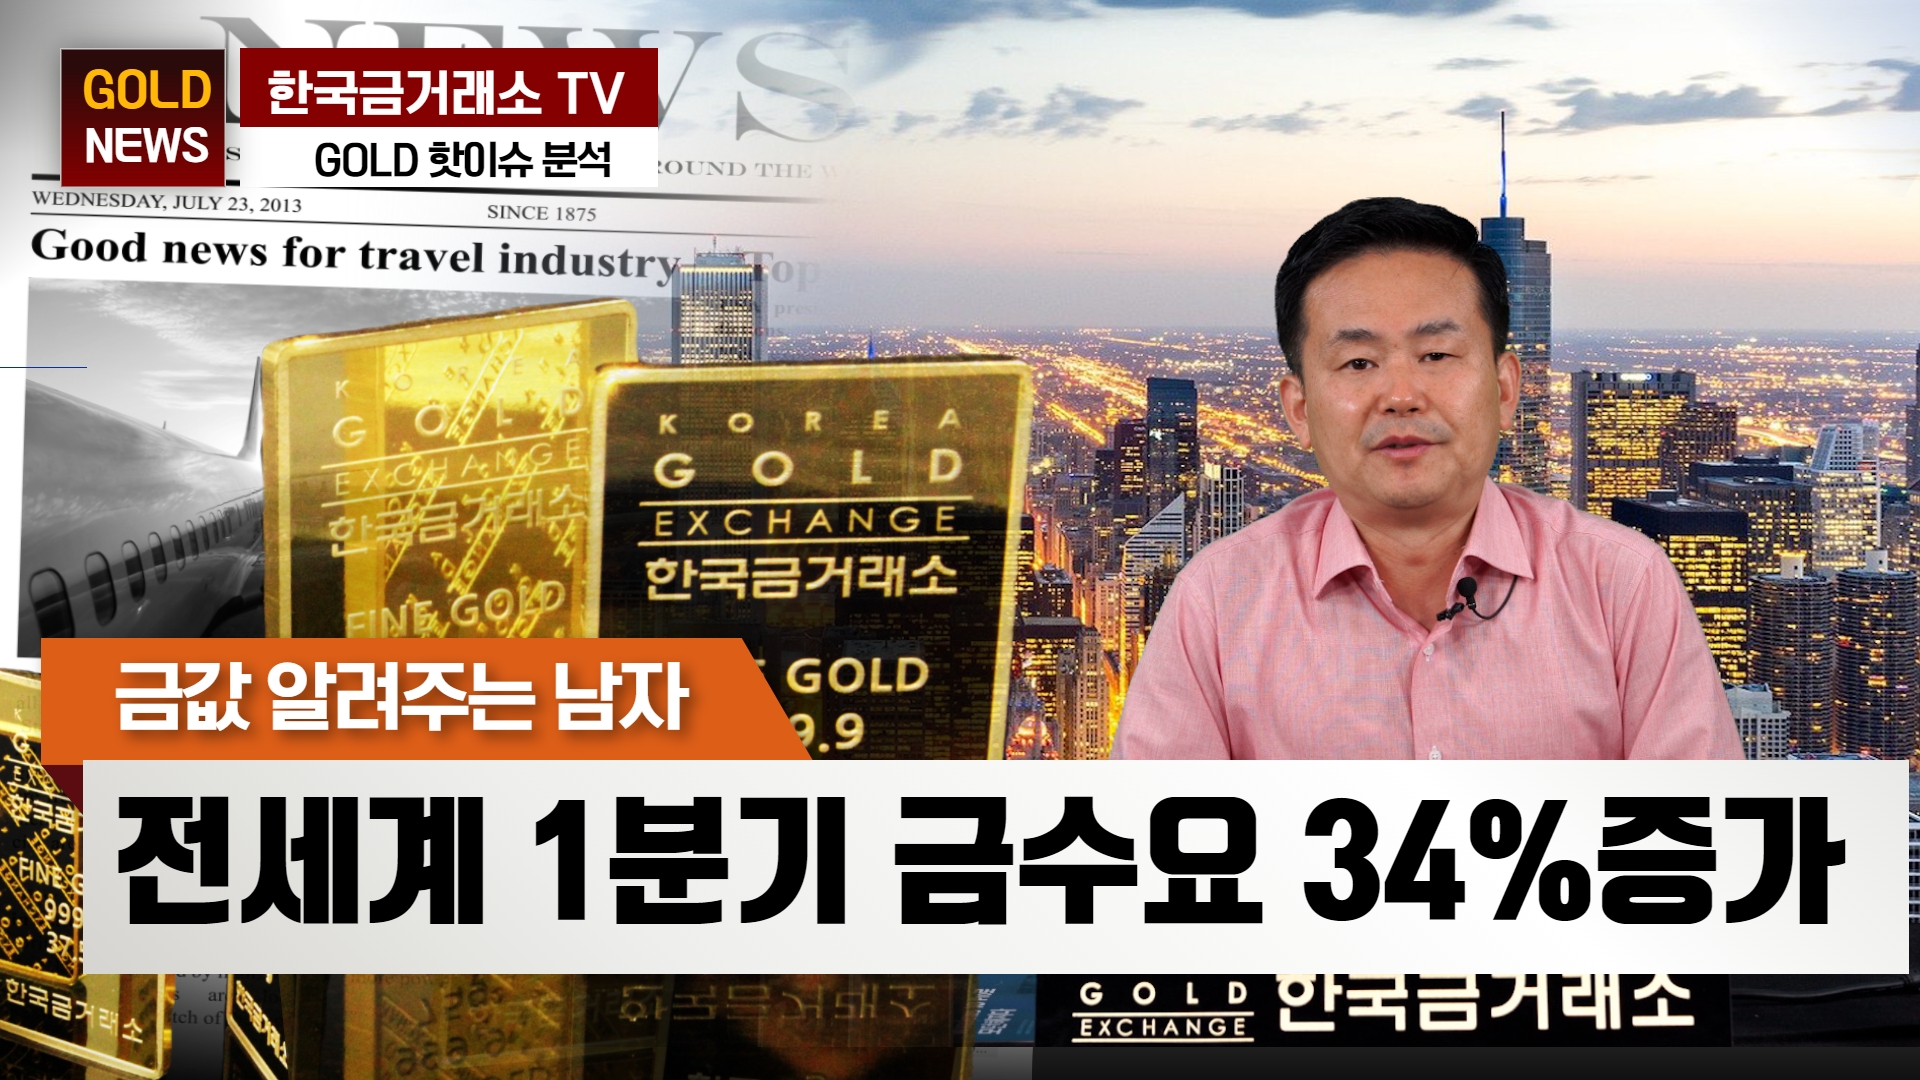 [해외전망] 전세계 1분기 금수요 34%증가